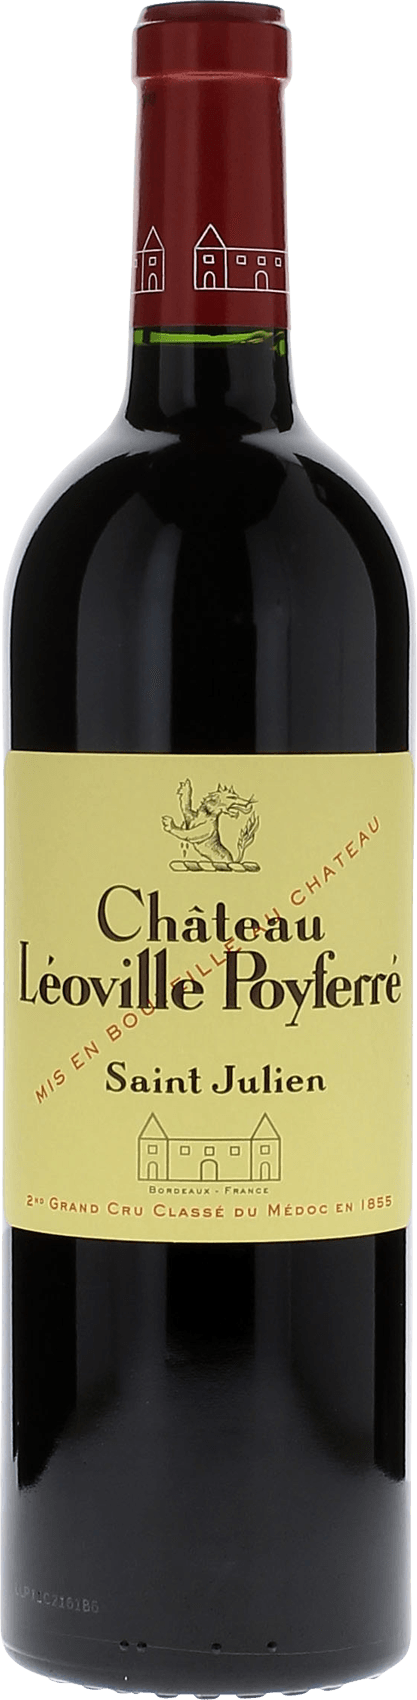 Leoville poyferre 2020 2me Grand cru class Saint-Julien, Bordeaux rouge